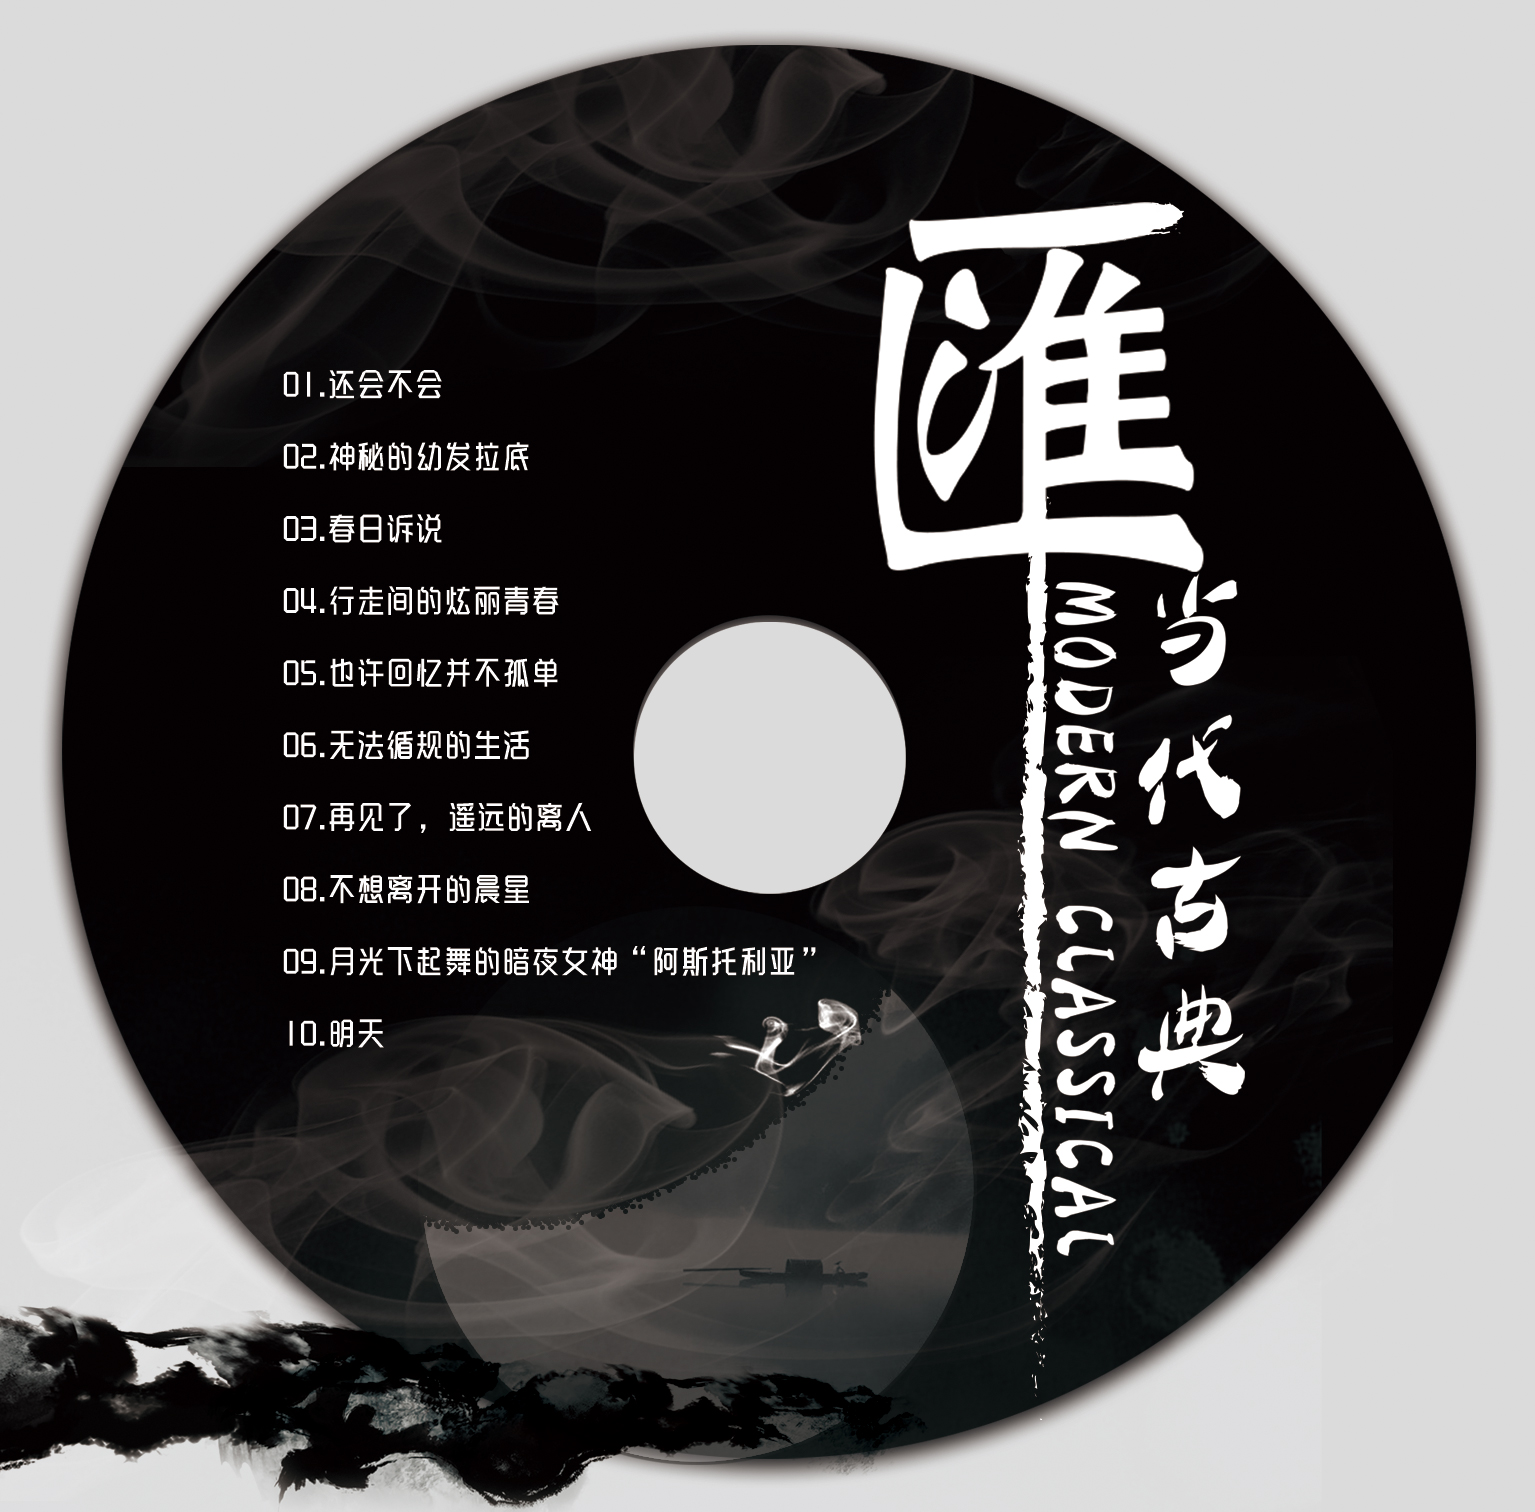 【纪念版CD唱片】专辑《不那么古典》、《滙》（实体唱片CD）-爱乐汇轻音乐团 作品